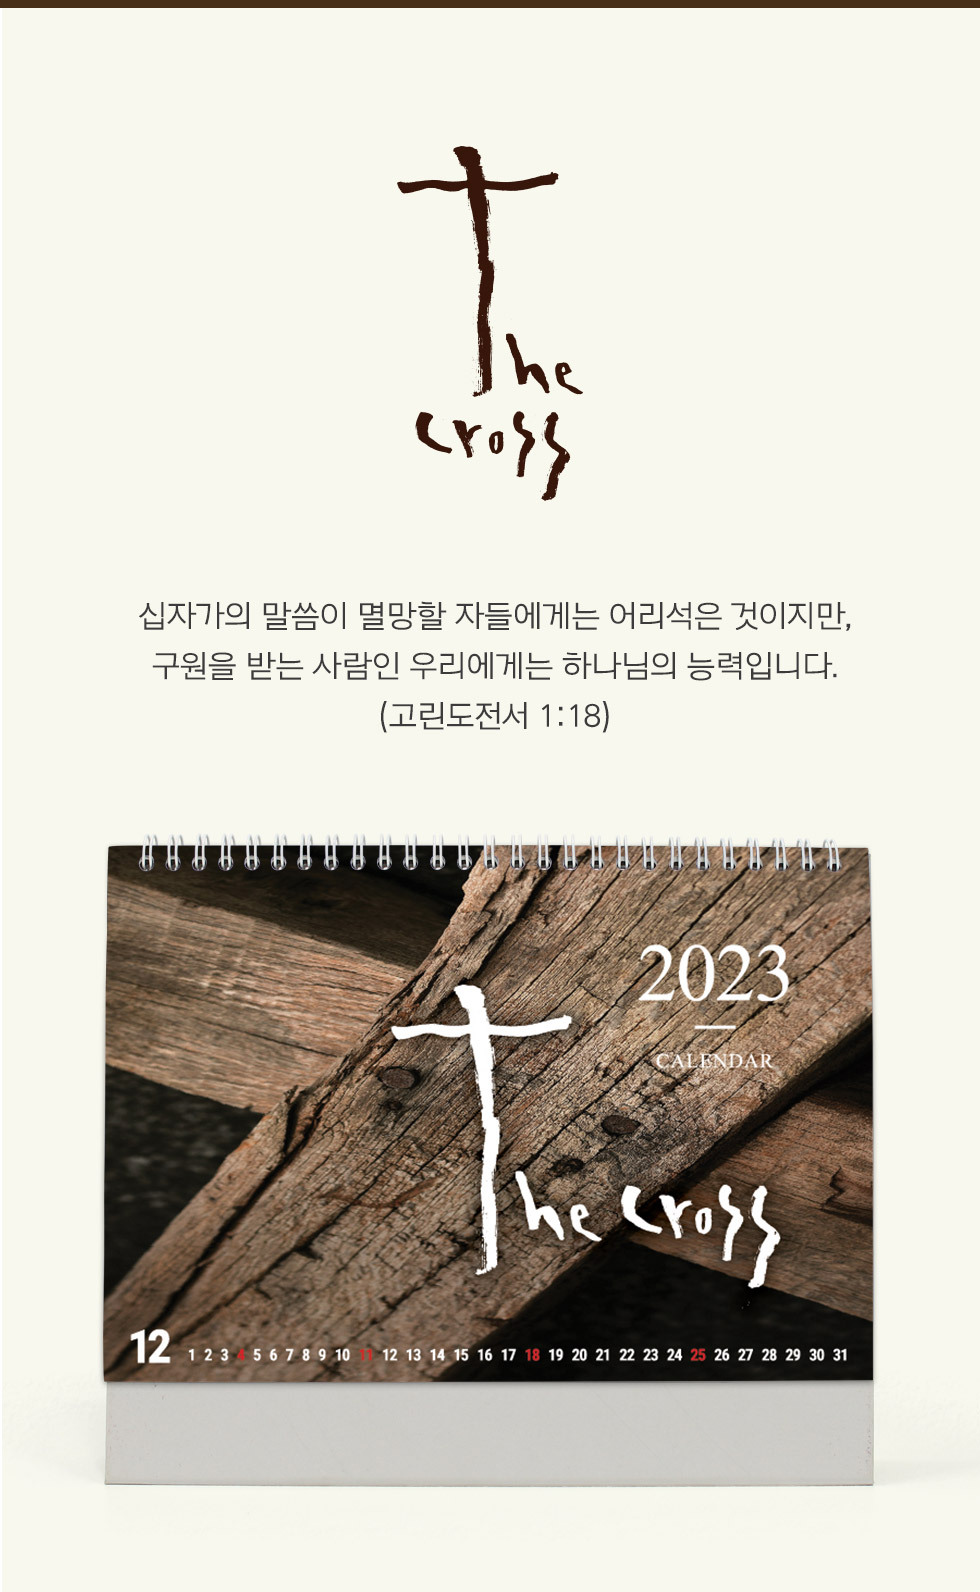 2023년 교회달력 탁상캘린더 십자가 the Cross 소개